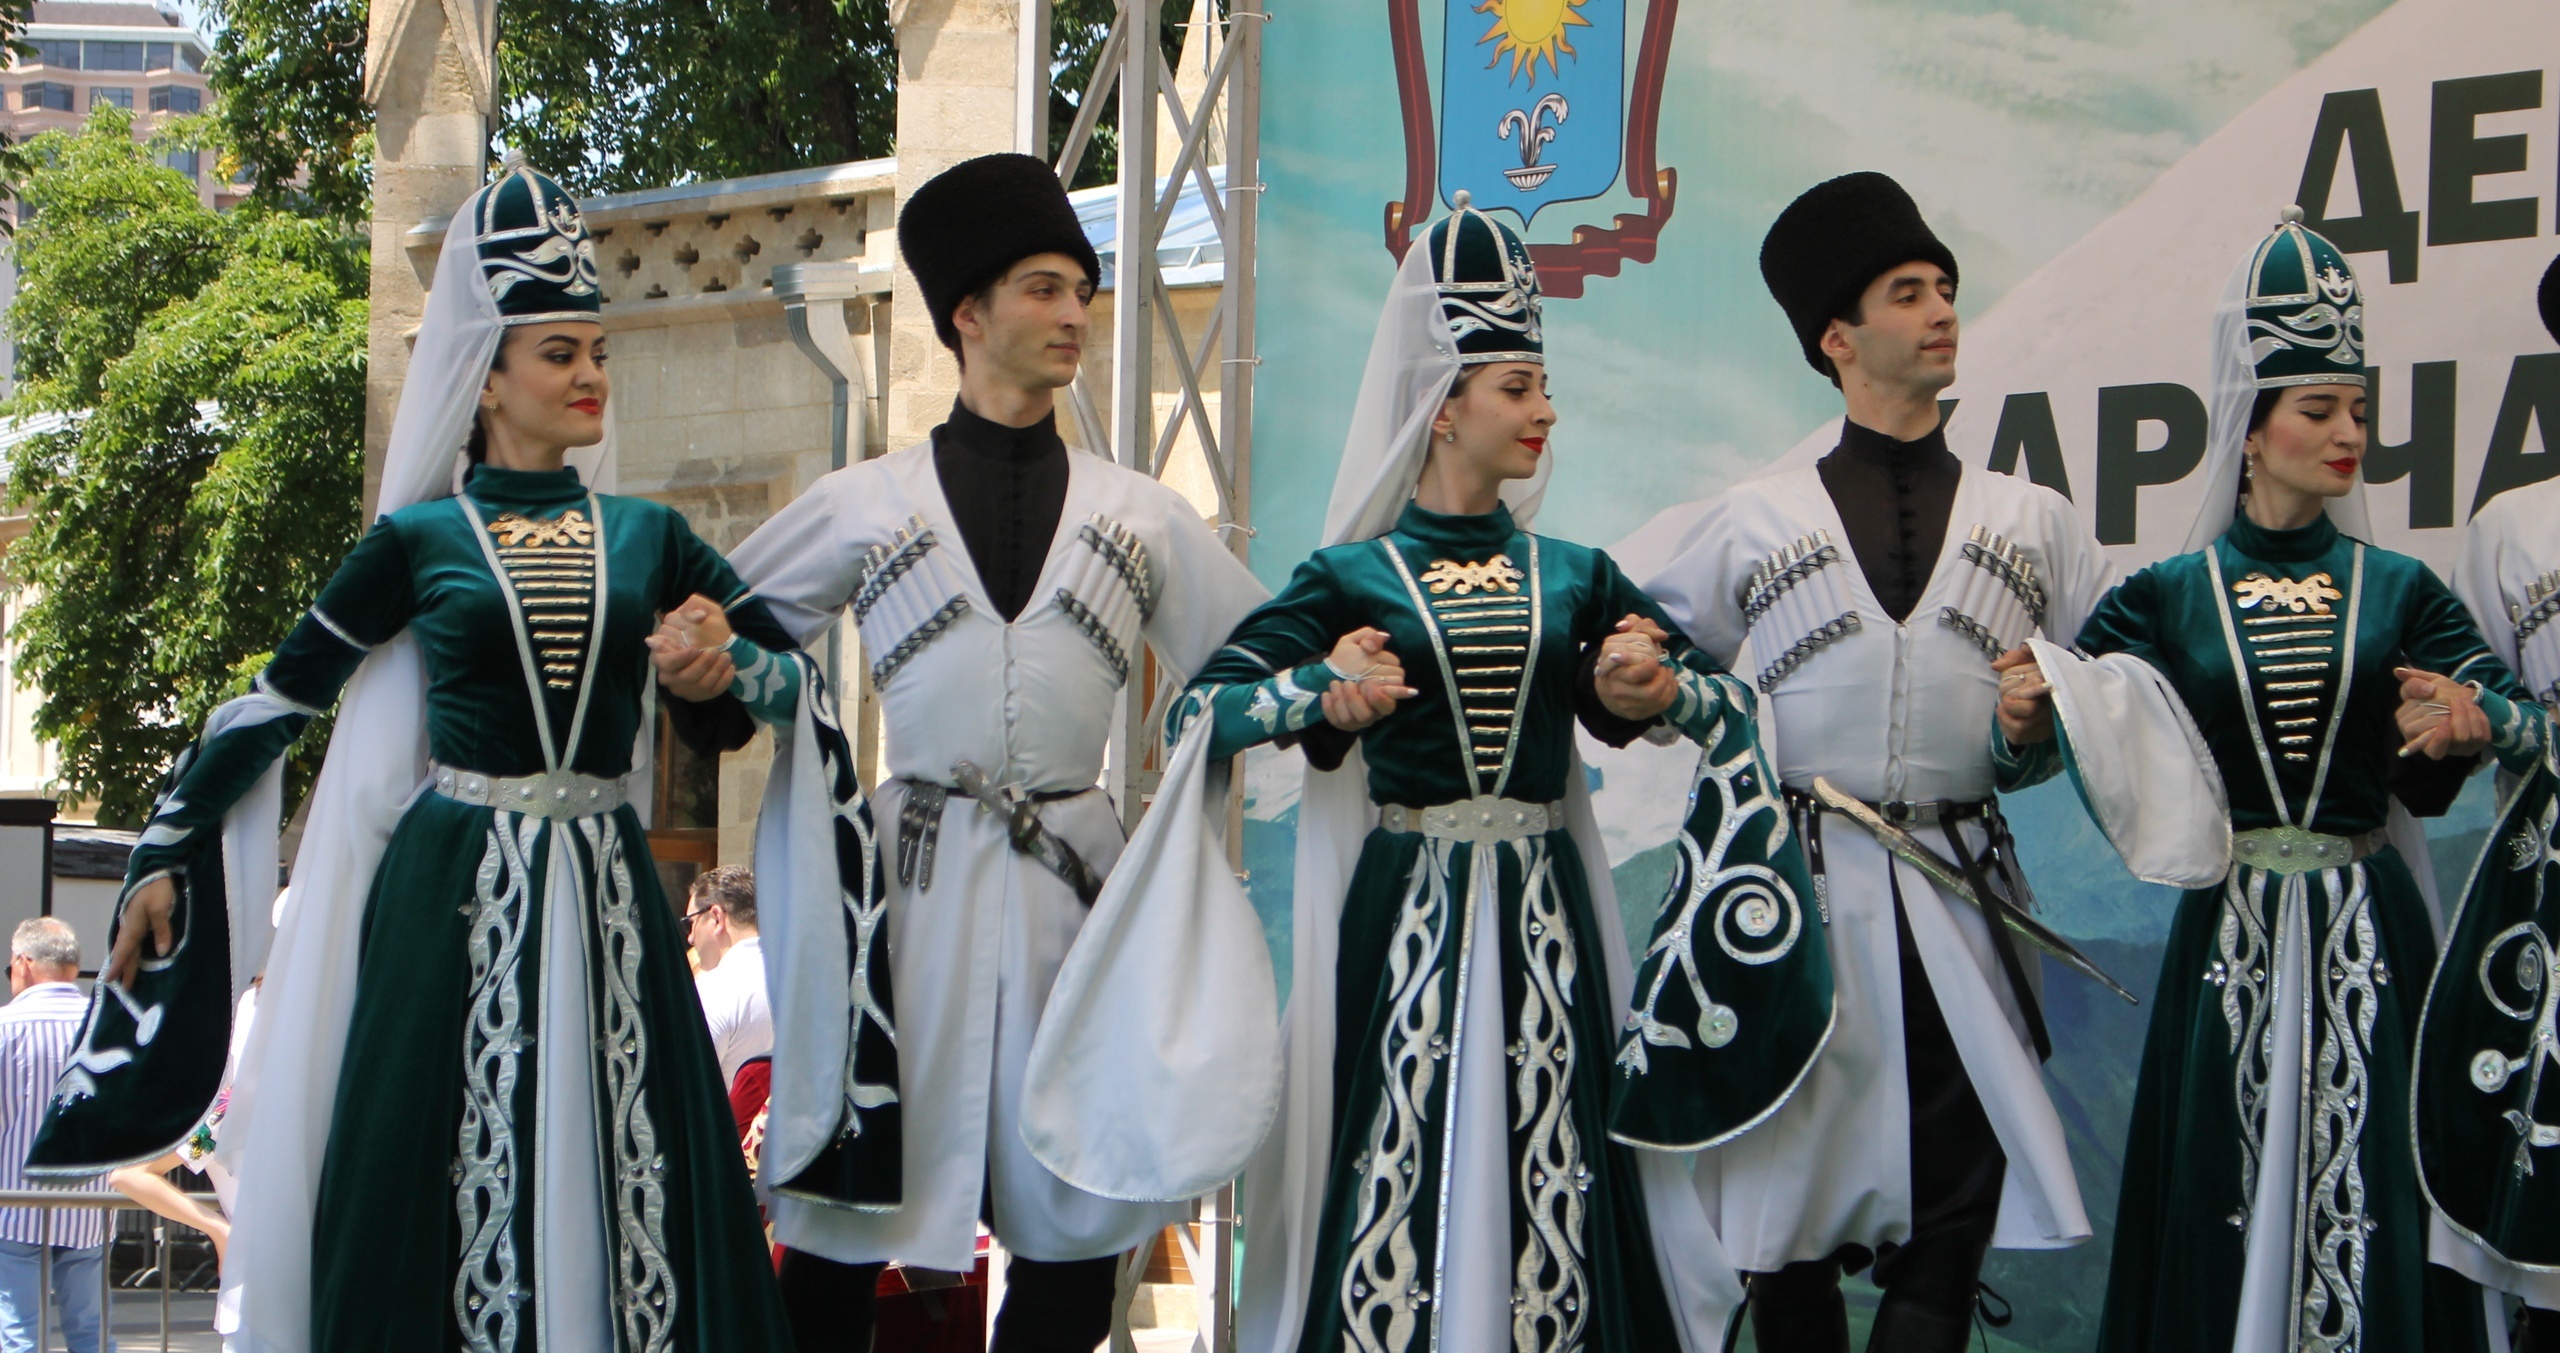 Основные культуры северного кавказа